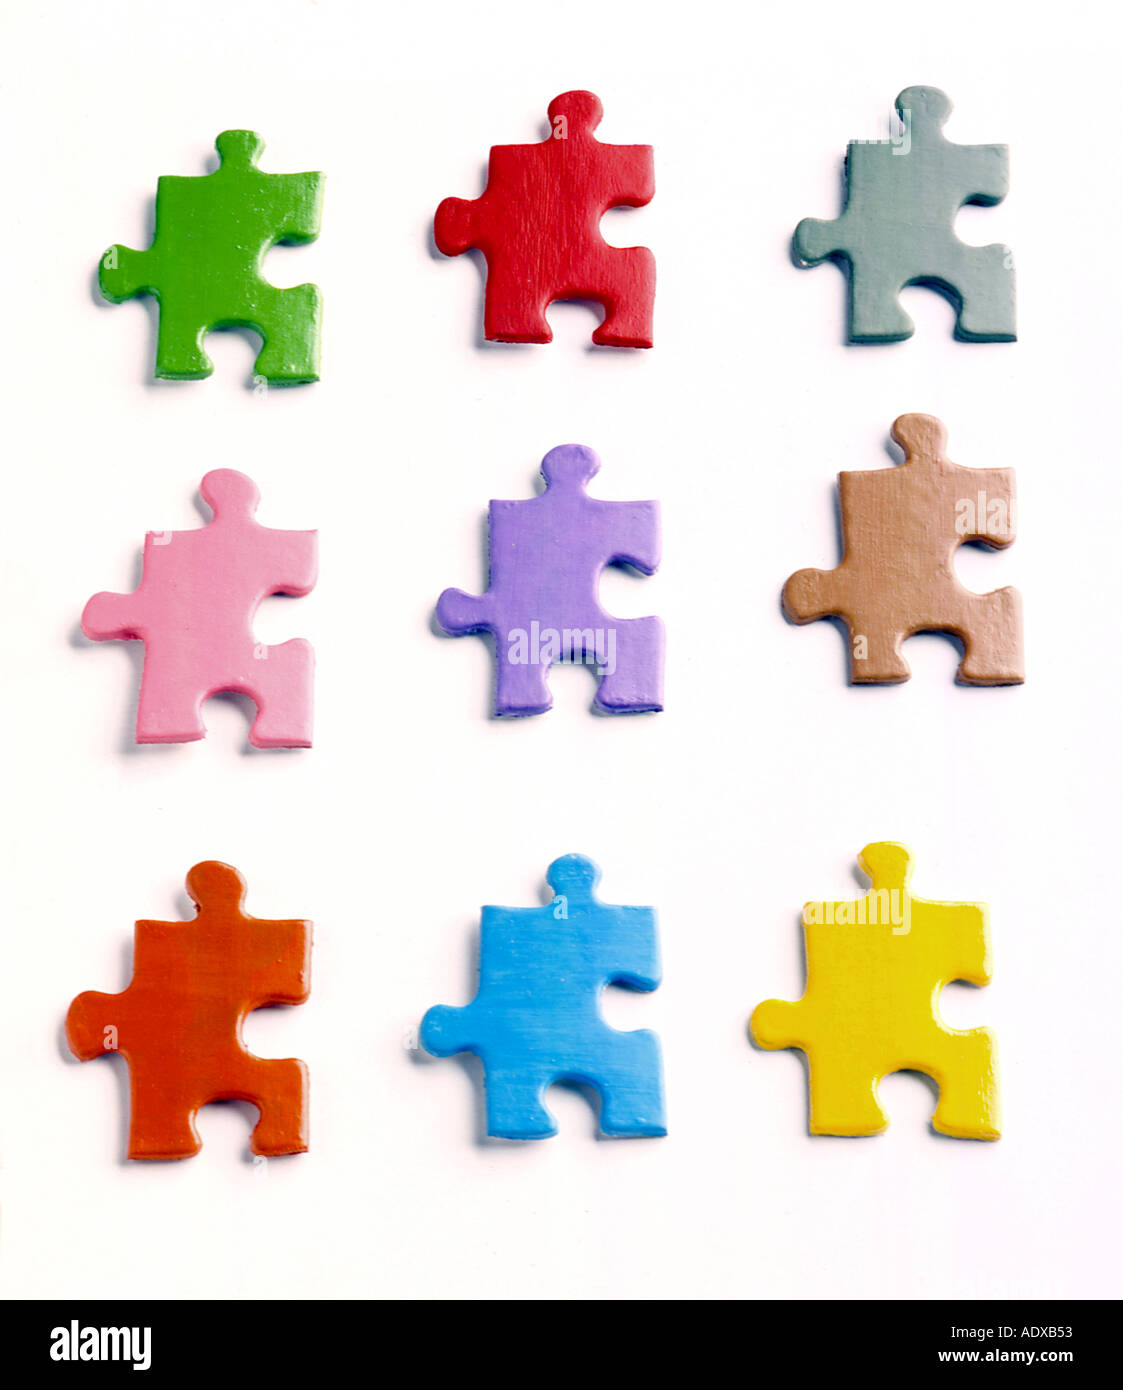 Concetti i pezzi del puzzle colorato simile simili che assomigliano a colori colori match color matching montare insieme miscellane rompicapo Foto Stock